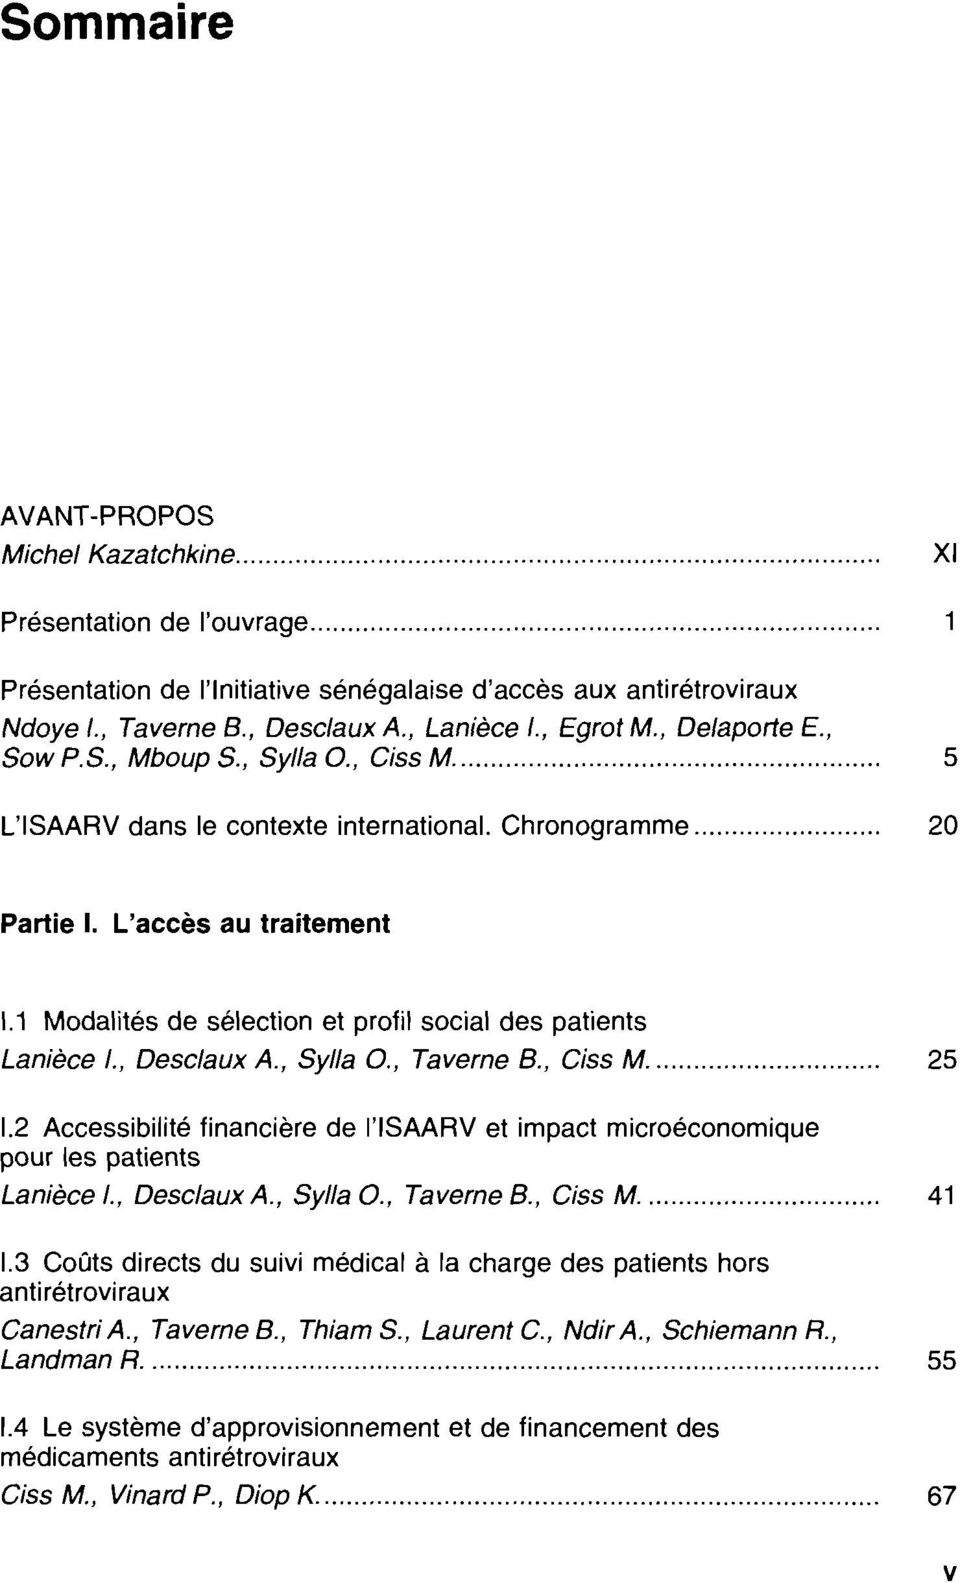 1 Modalités de sélection et profil social des patients Lanièce 1., Desclaux A, Sylla o; Taverne B., Ciss M... 25 1.